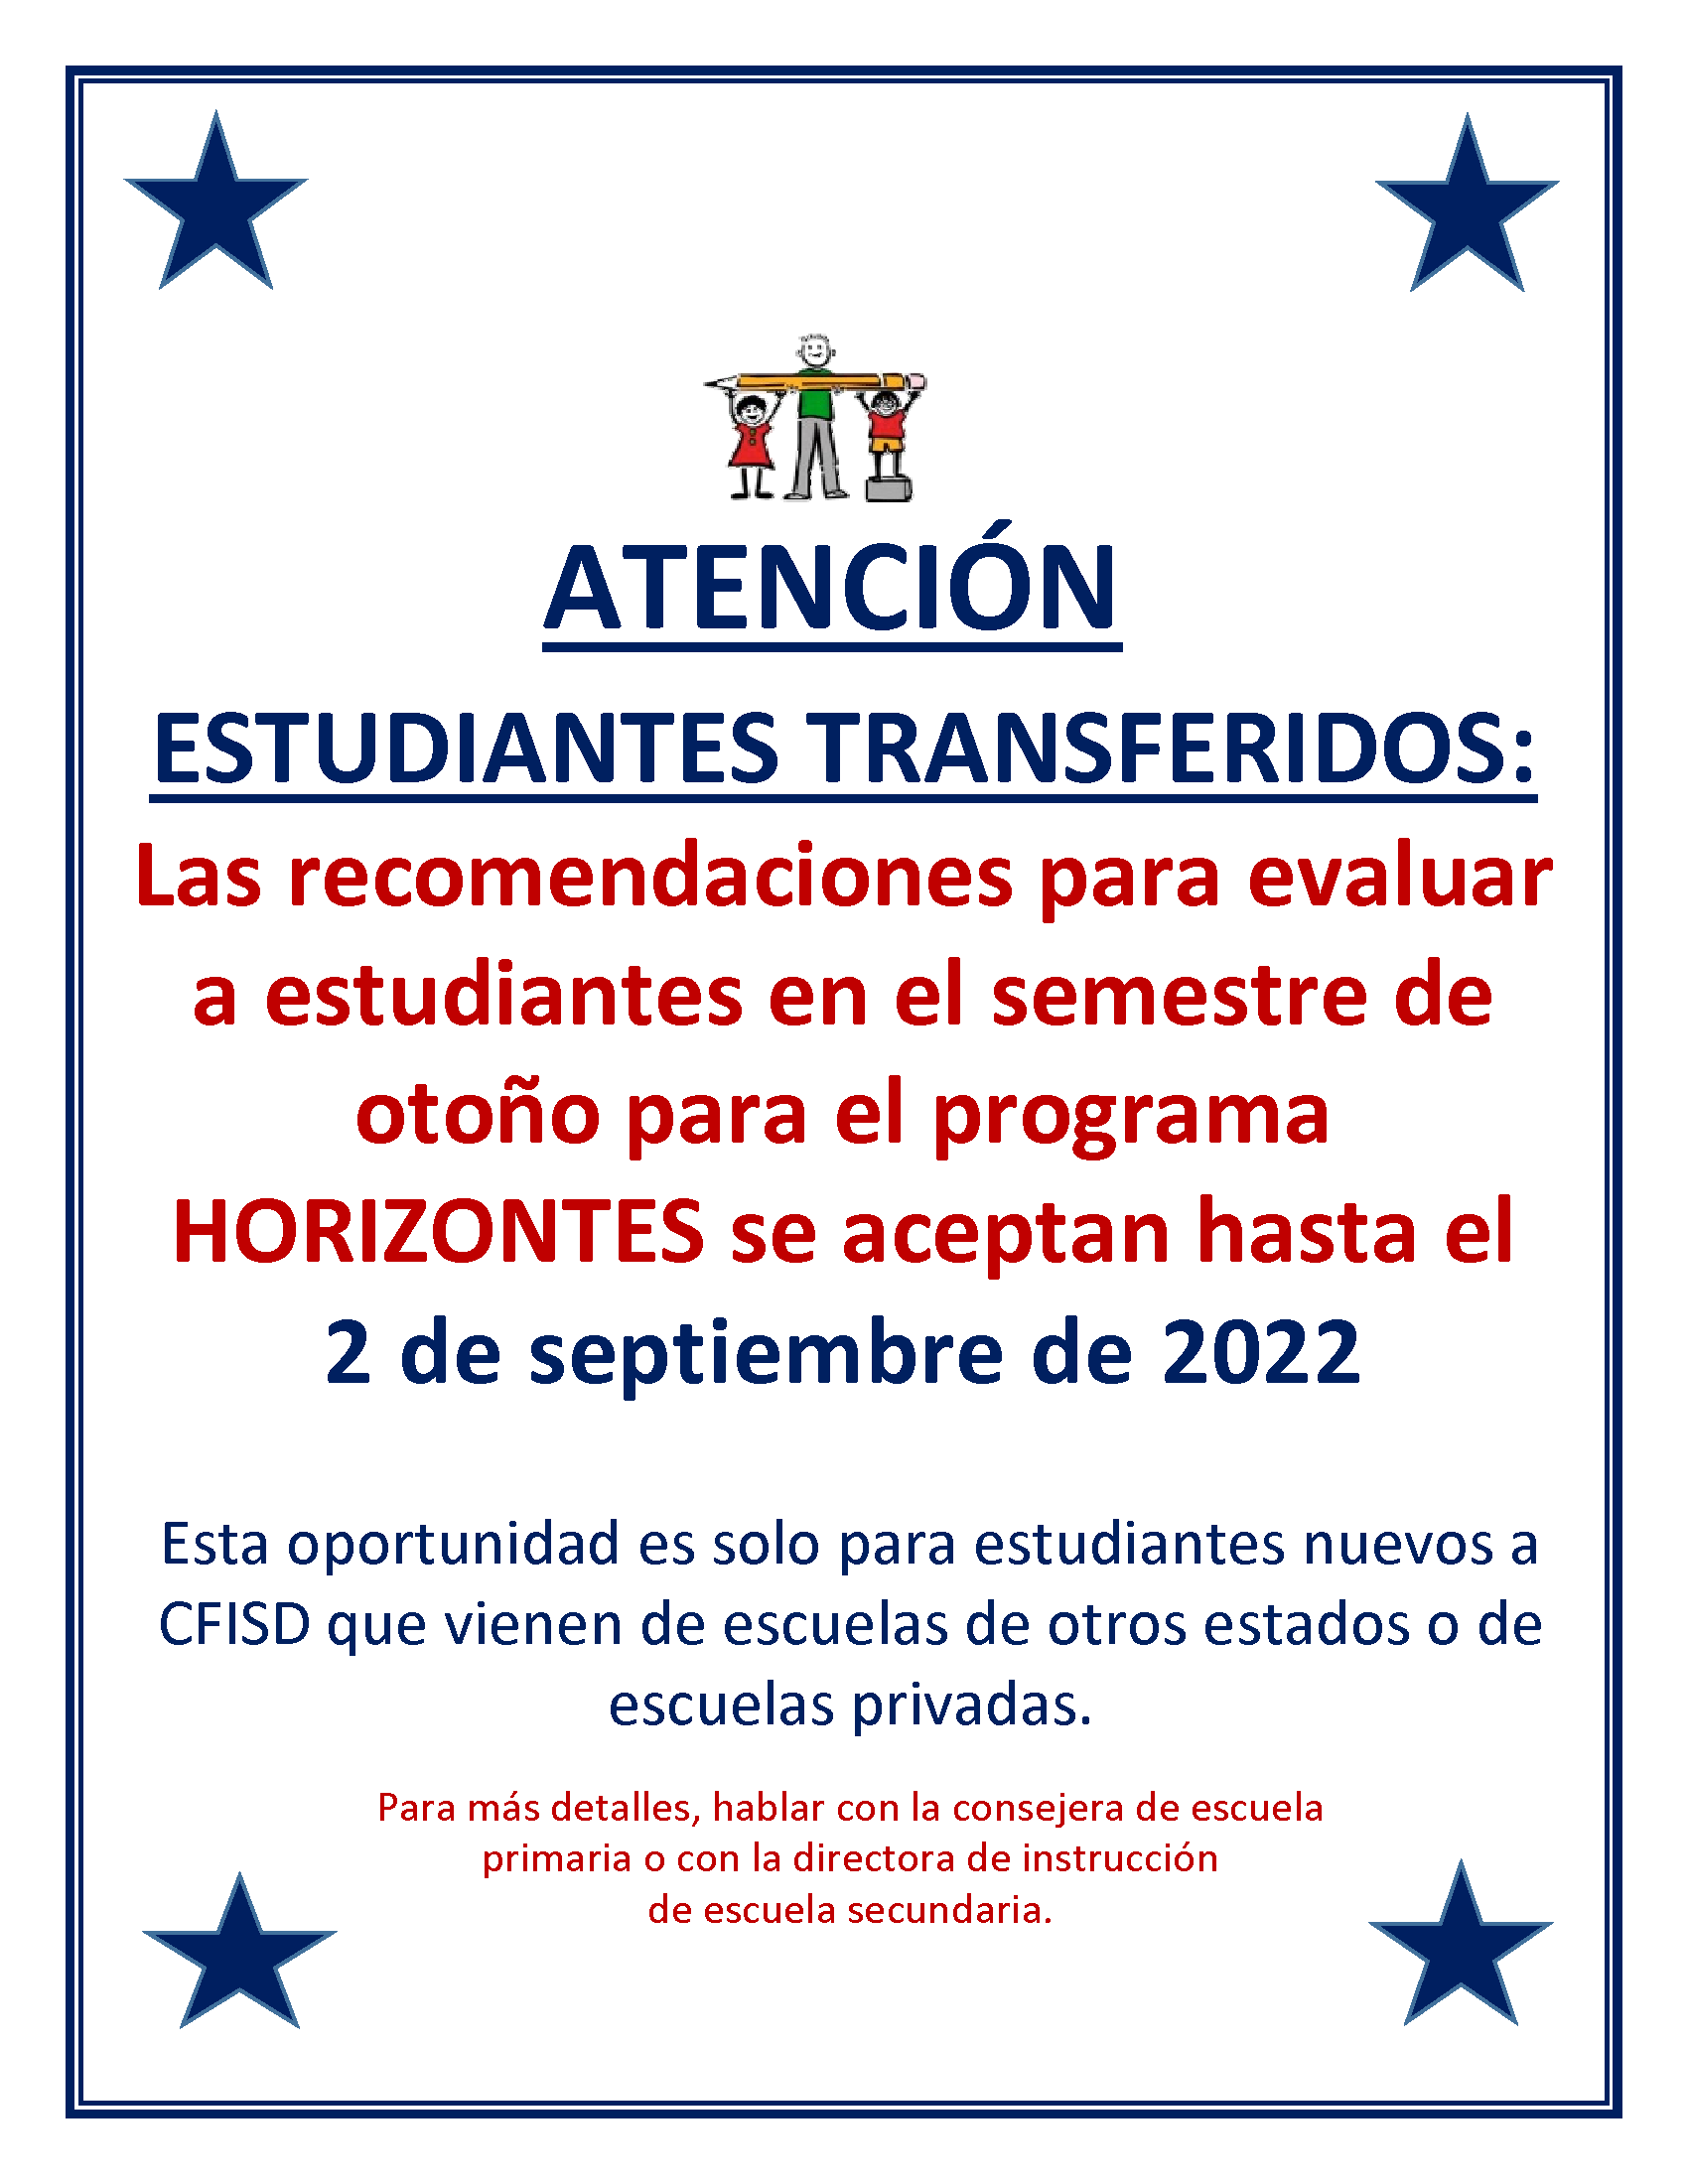 Atención estudiantes transferidos: Las recomendaciones para evaluar a estudiantes en el semestre de otoño para el programa Horizontes se aceptarán hasta el 2 de septiembre de 2022